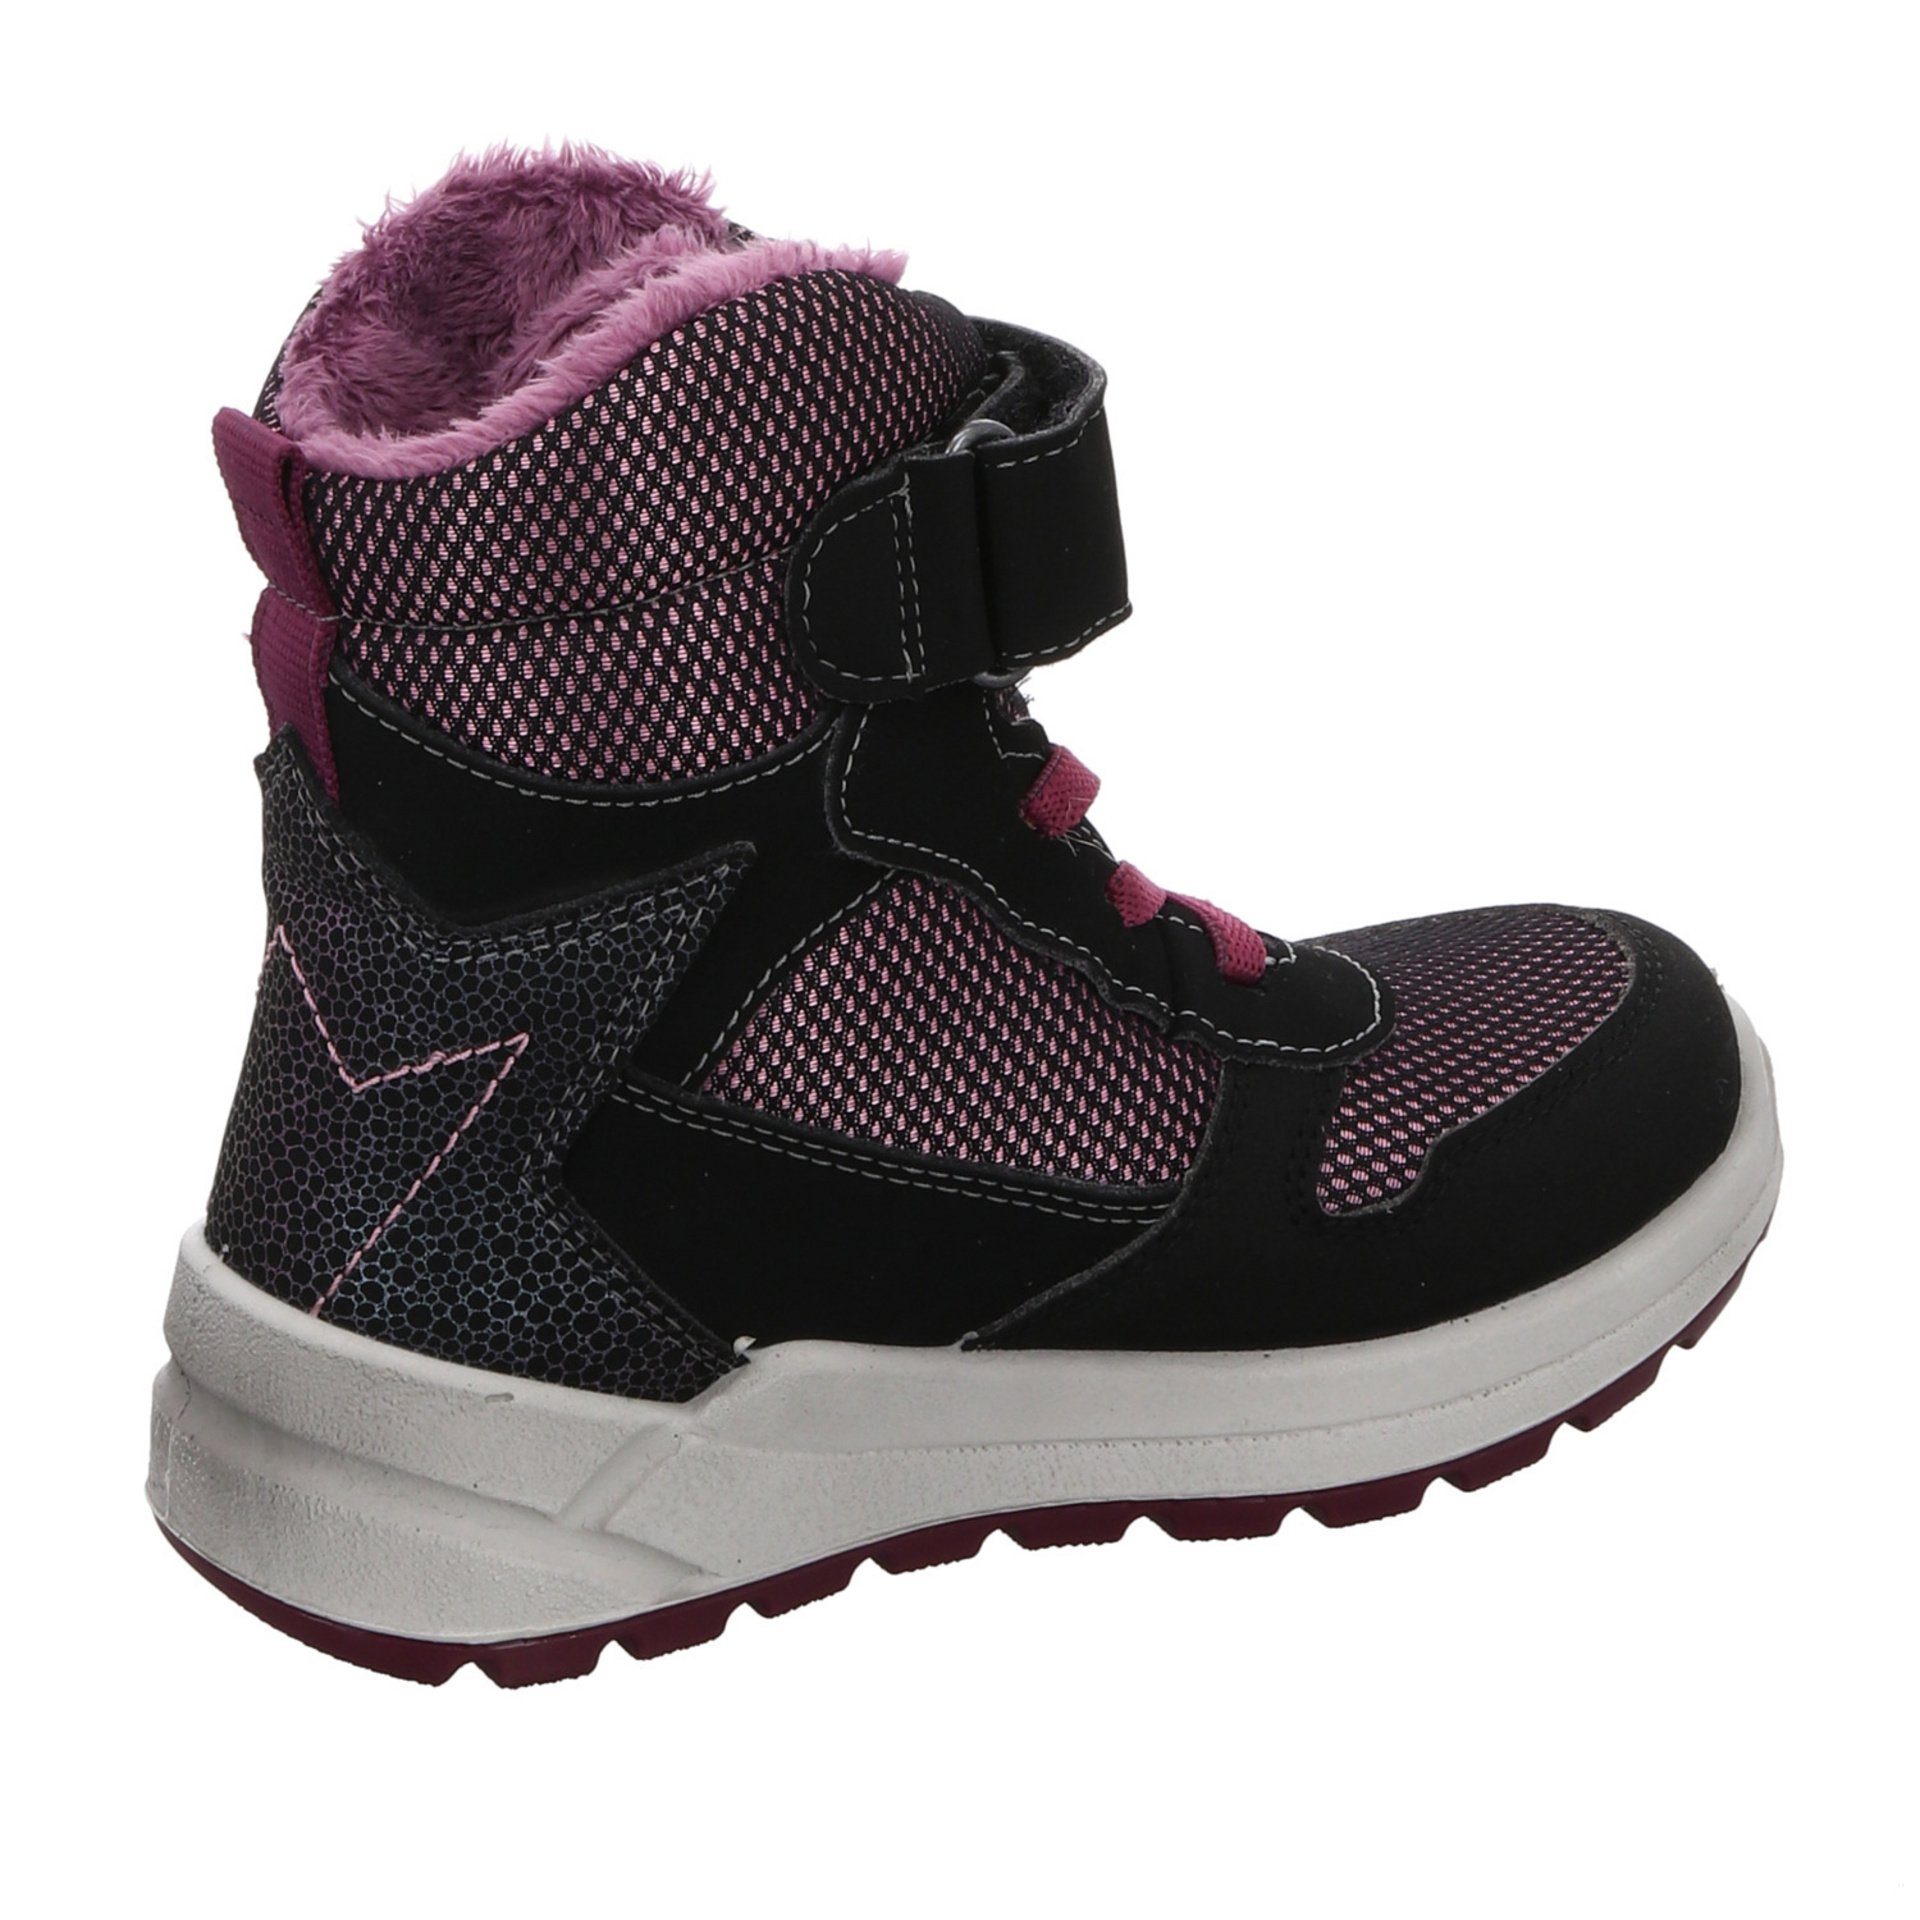 Ricosta Mädchen Stiefel Schuhe schwarz Kinderschuhe Synthetikkombination Boots Gela Stiefelette